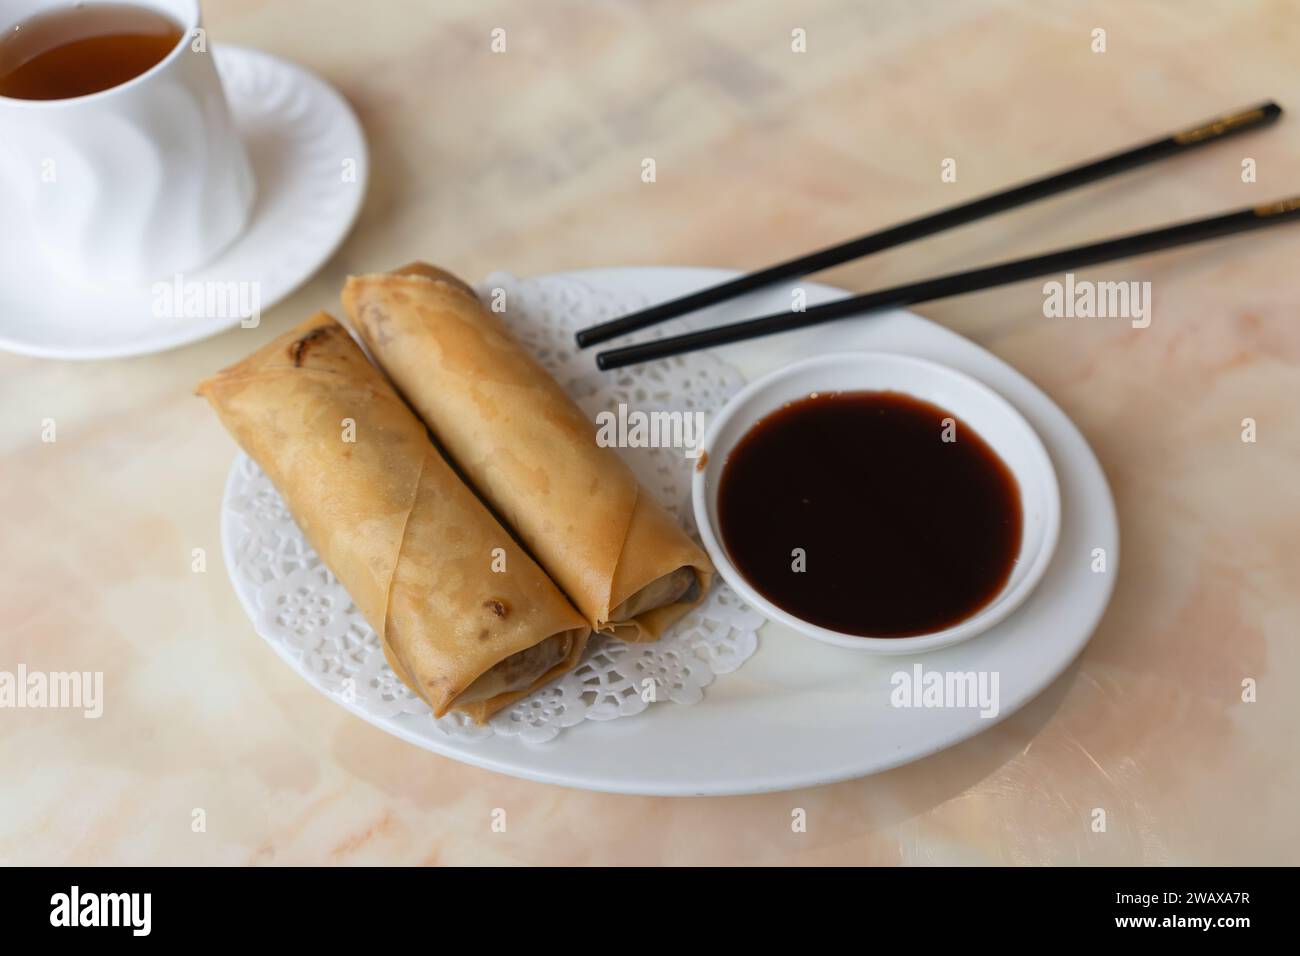 Petits pains de printemps chinois traditionnels servis avec sauce hoi Sin et thé Oolong avec bâtonnets noirs dans un restaurant chinois, au Royaume-Uni Banque D'Images